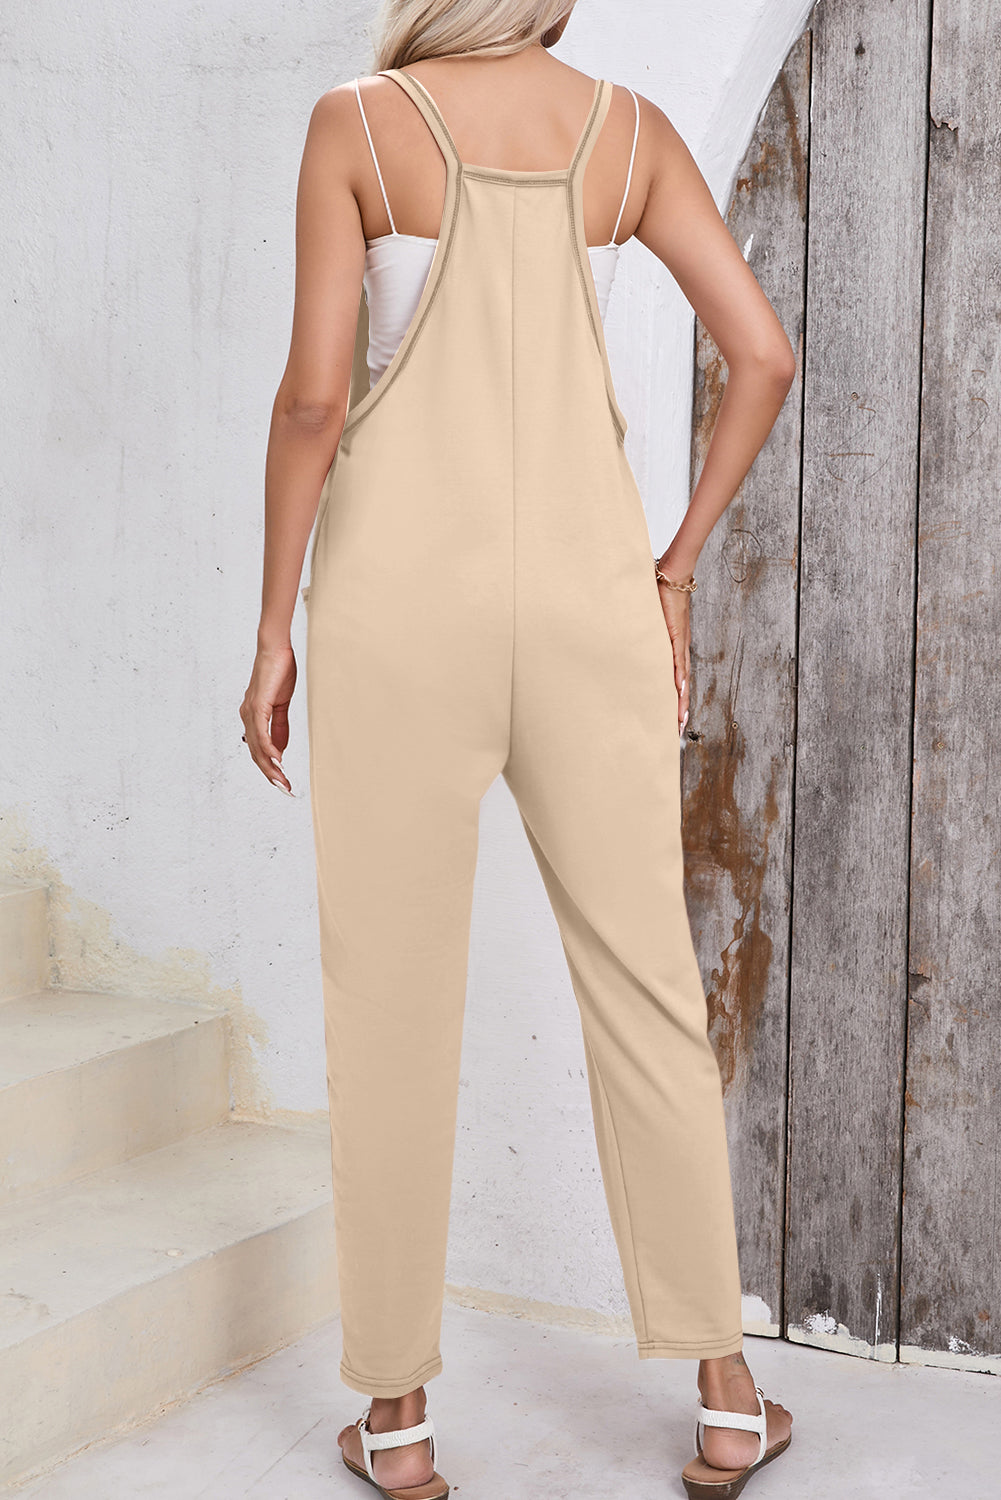 Apricot Side Pockets Harem Pants Sleeveless V Neck Jumpsuit Pre Order Bottoms JT's Designer Fashion